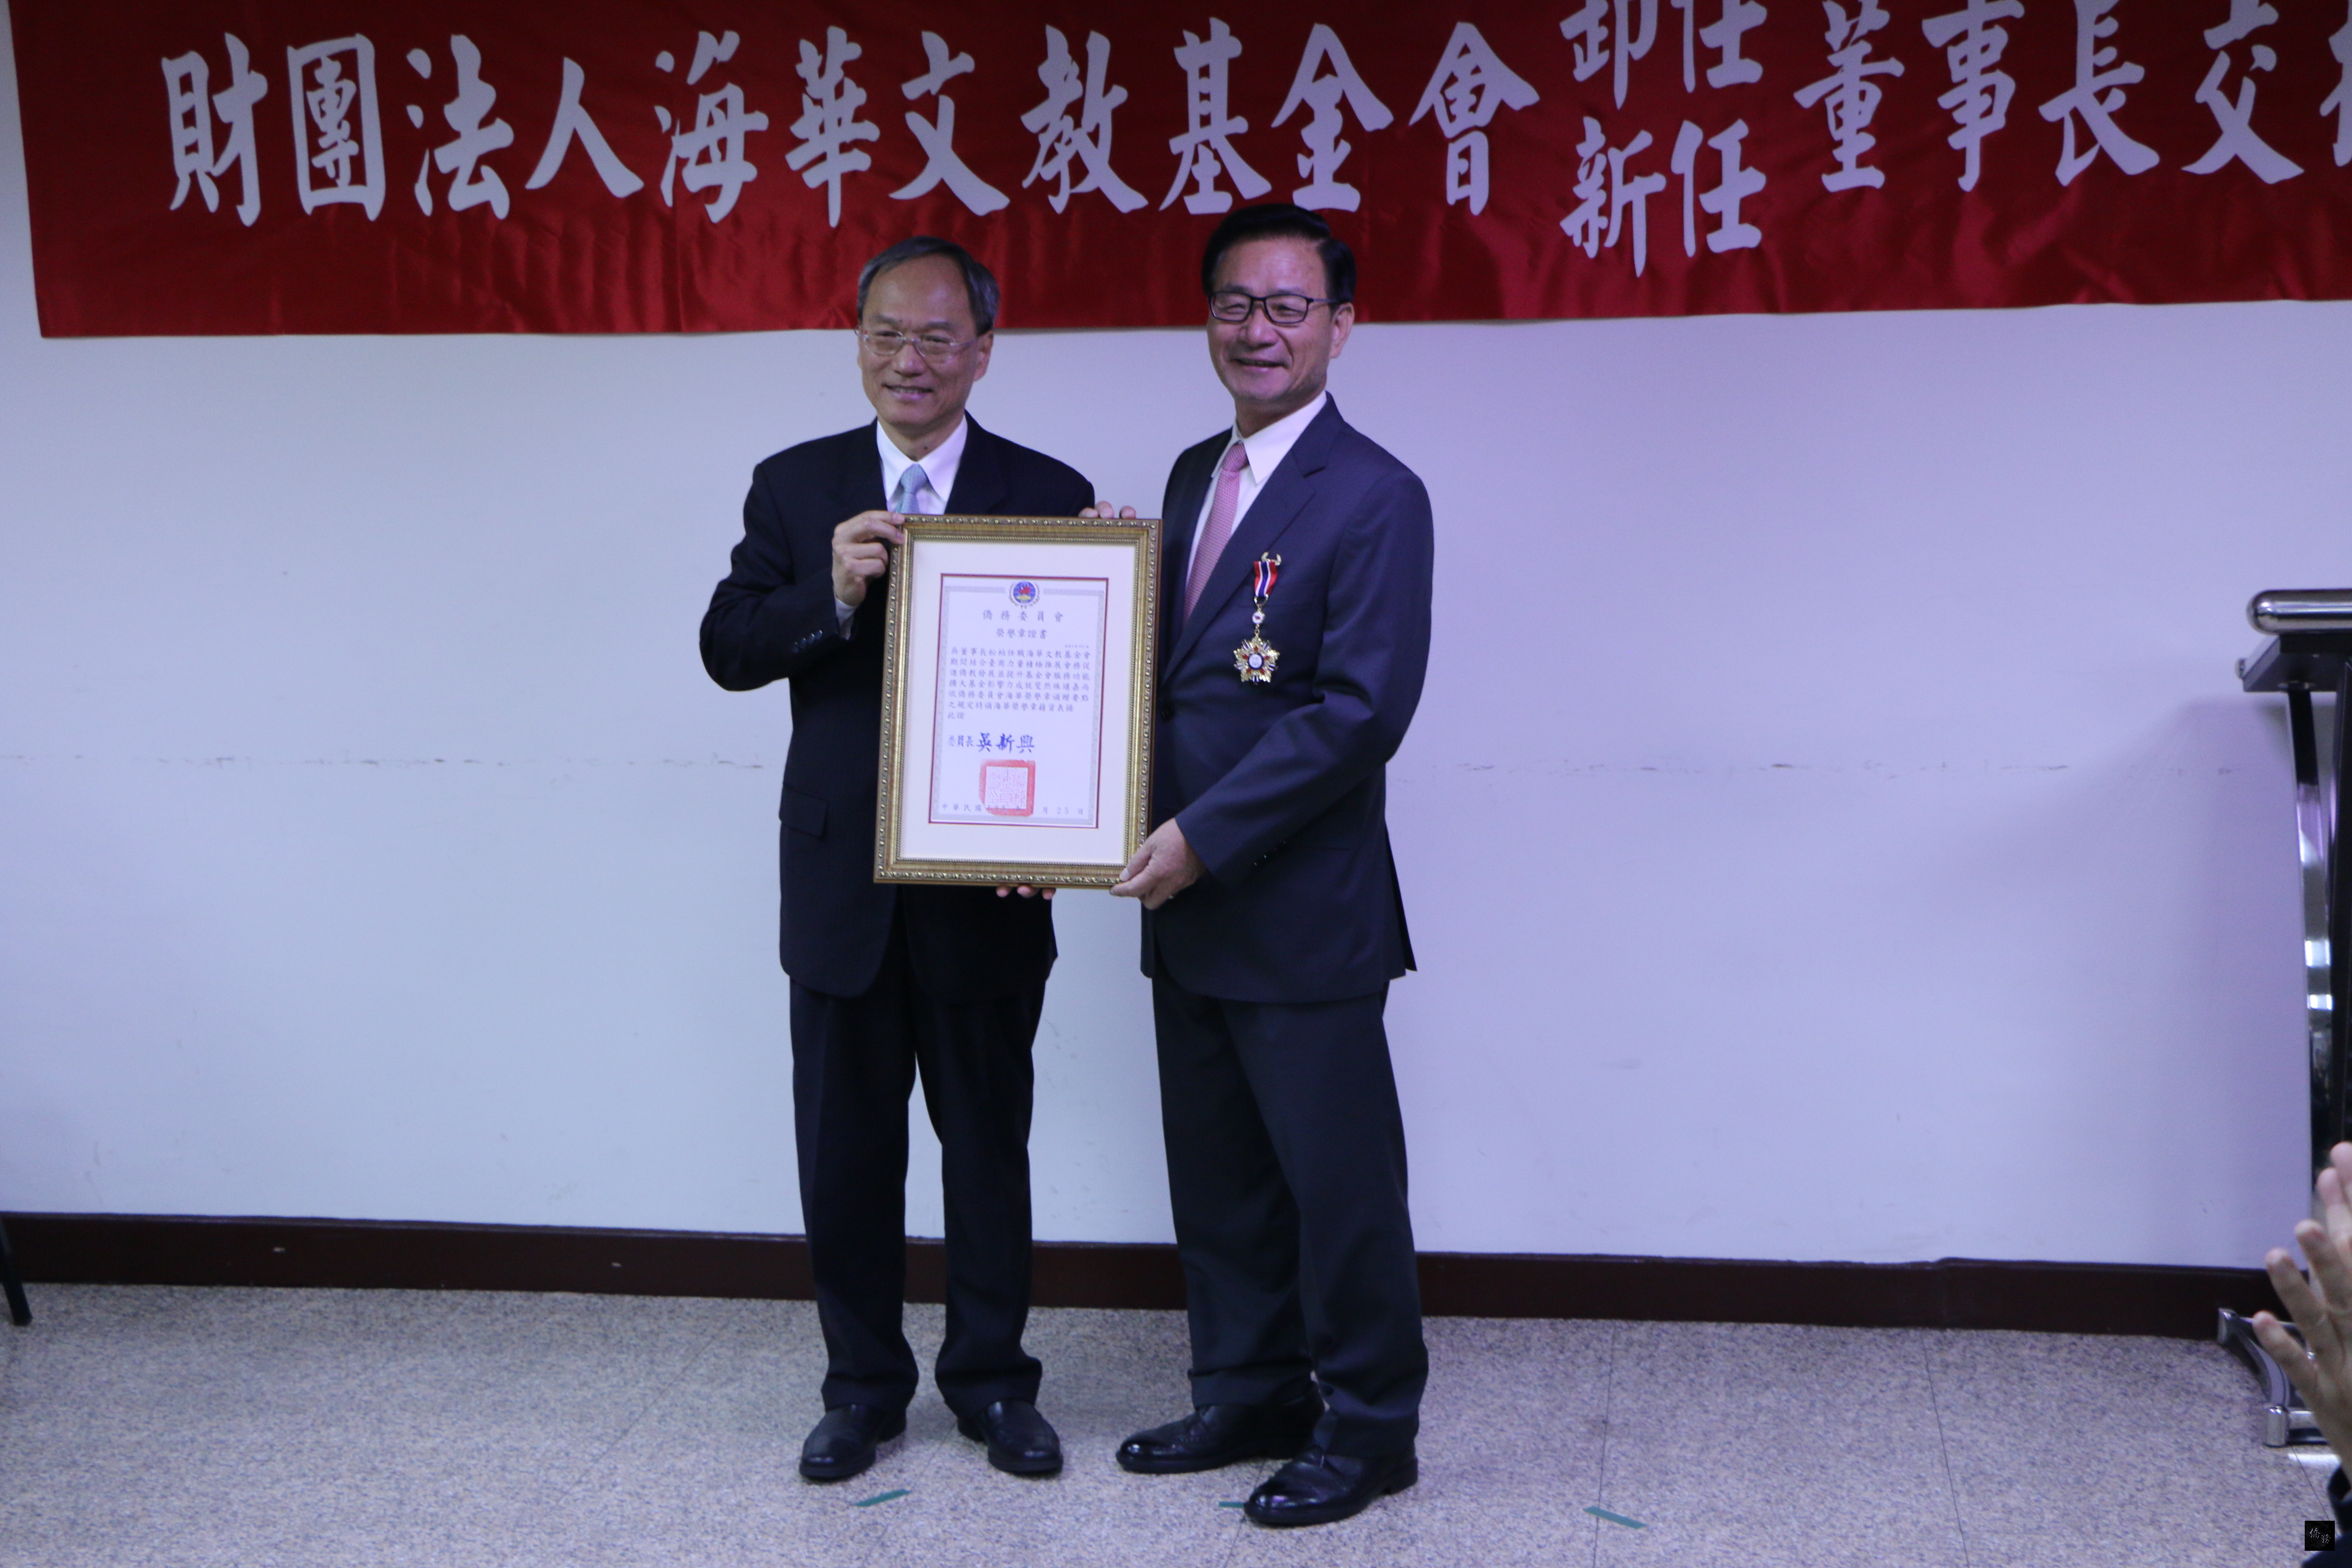 僑務委員會委員長吳新興（左）頒發海華榮譽章予吳松柏（右），表揚他提升基金會服務功能及擴大影響力的貢獻。